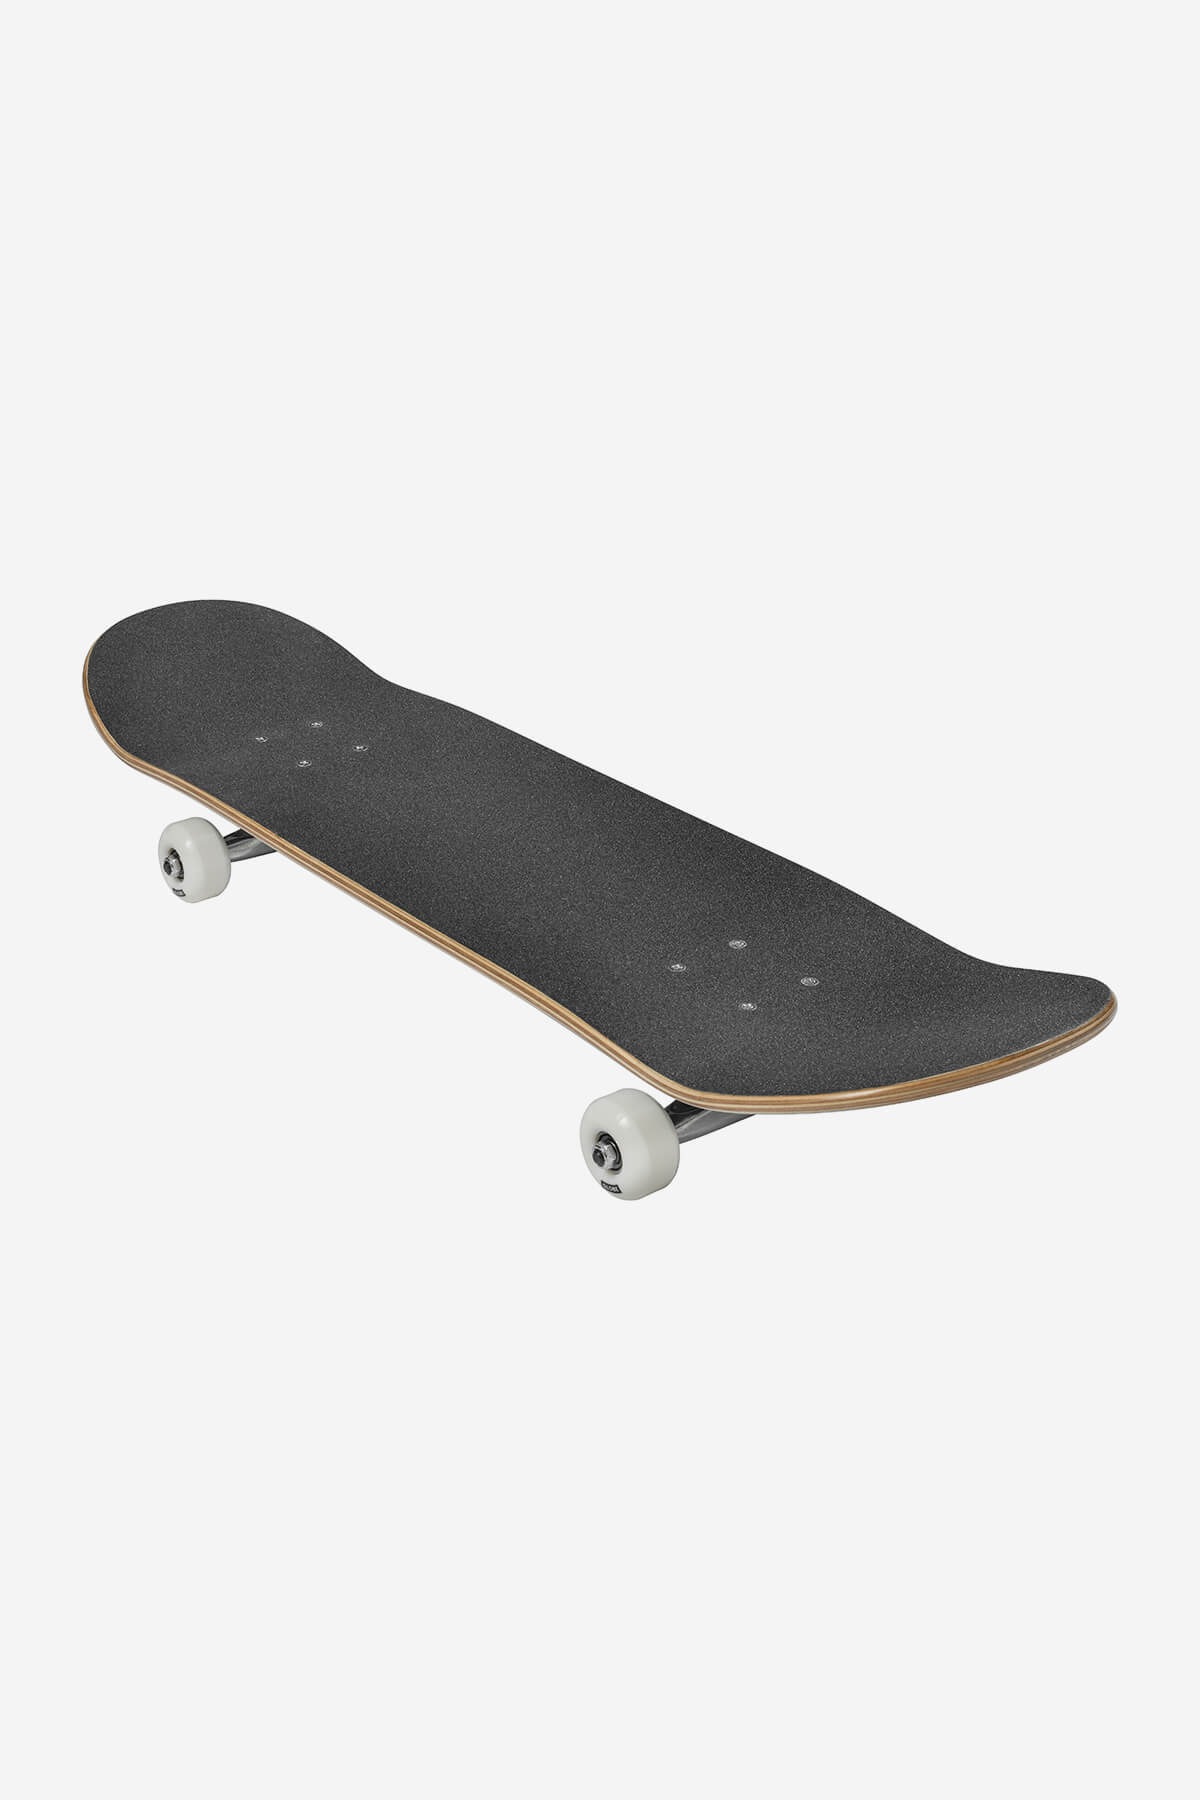 Globe - G0 Fubar - White/Nero - 8.0" completo Skateboard